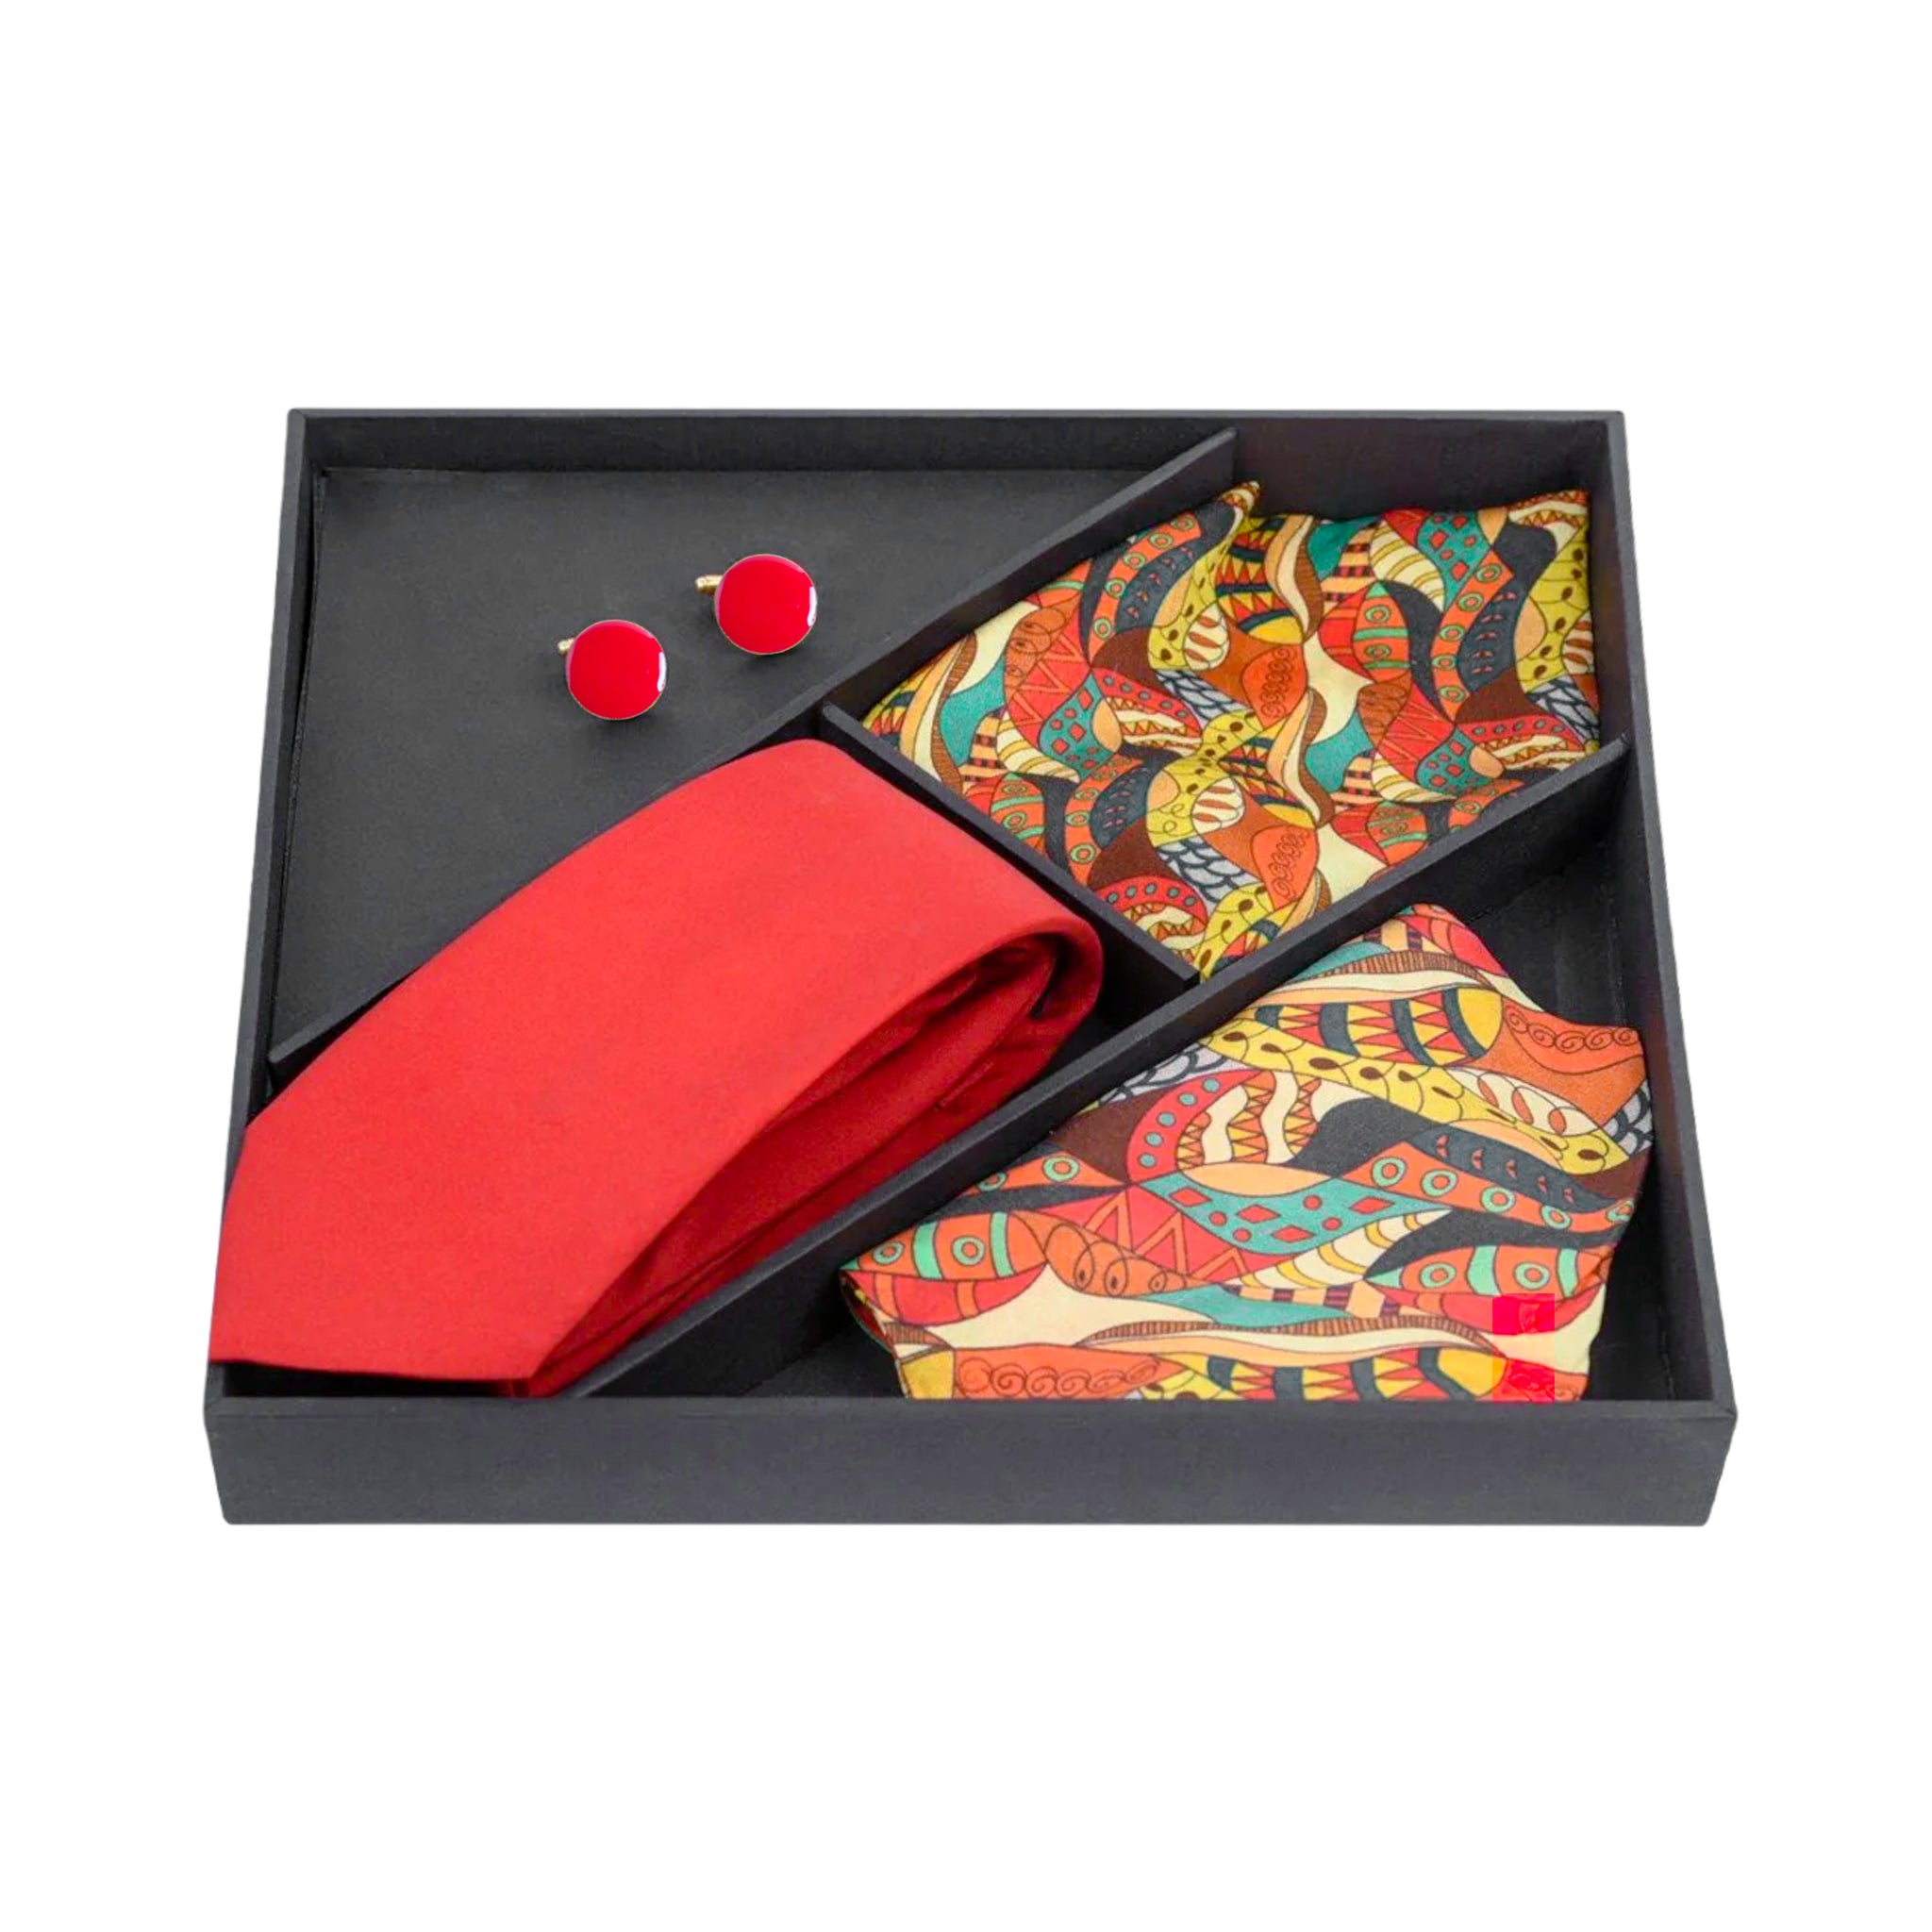 Chokore Special 4-in-1 Marine Gift Set (Pocket Square, Tie, Cravat & Cufflinks)